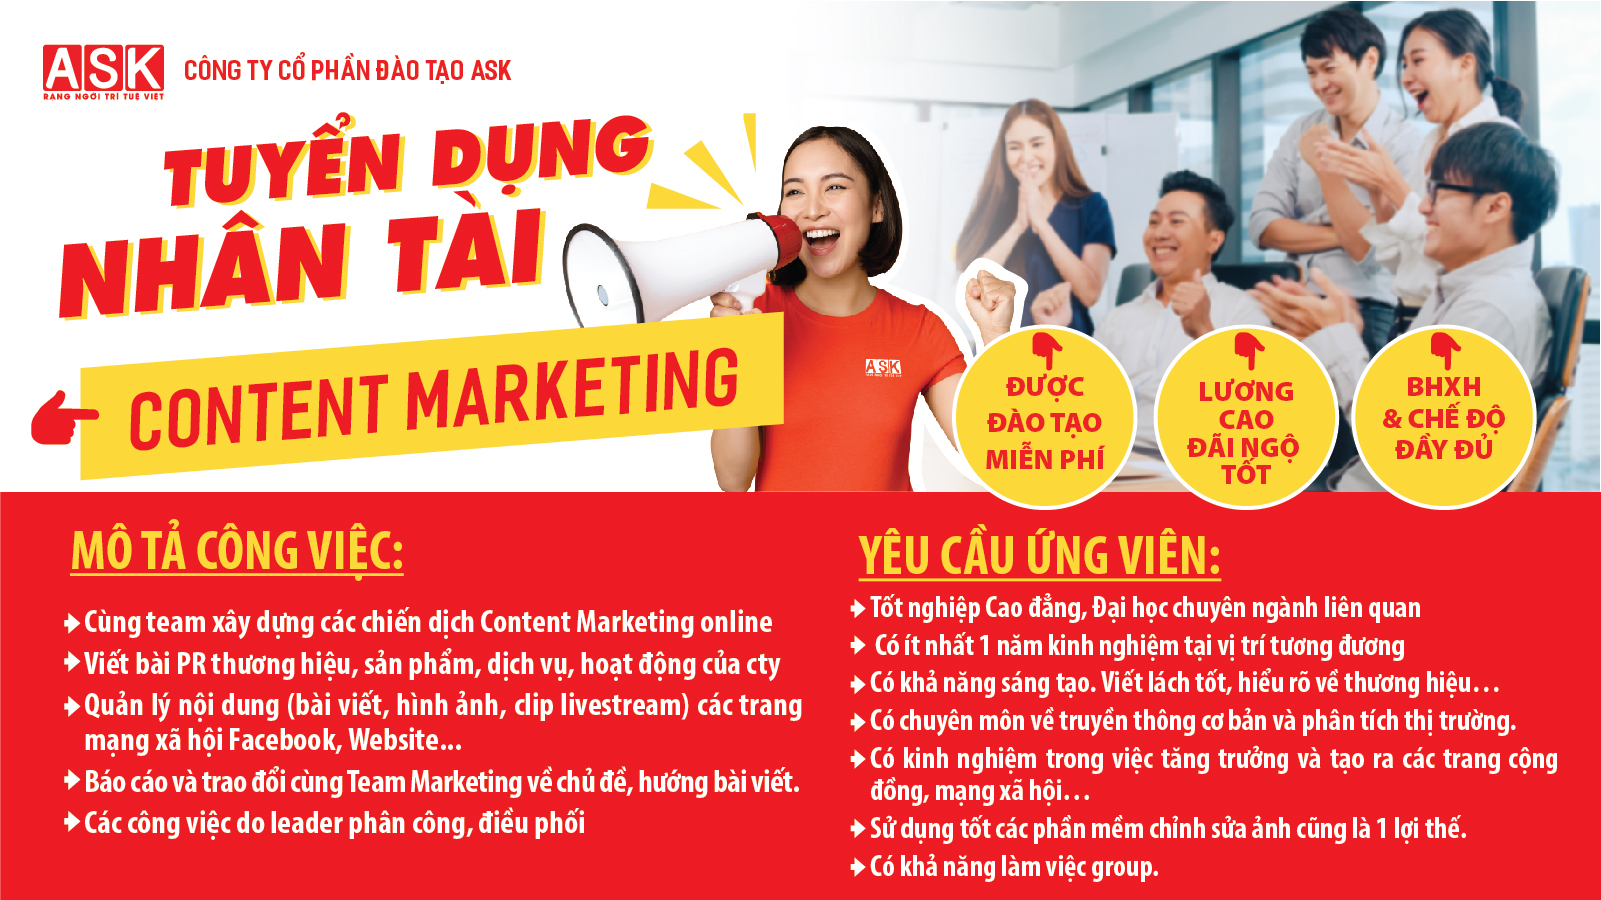 ASK Hà Nội – Tuyển dụng vị trí “Content Marketing”